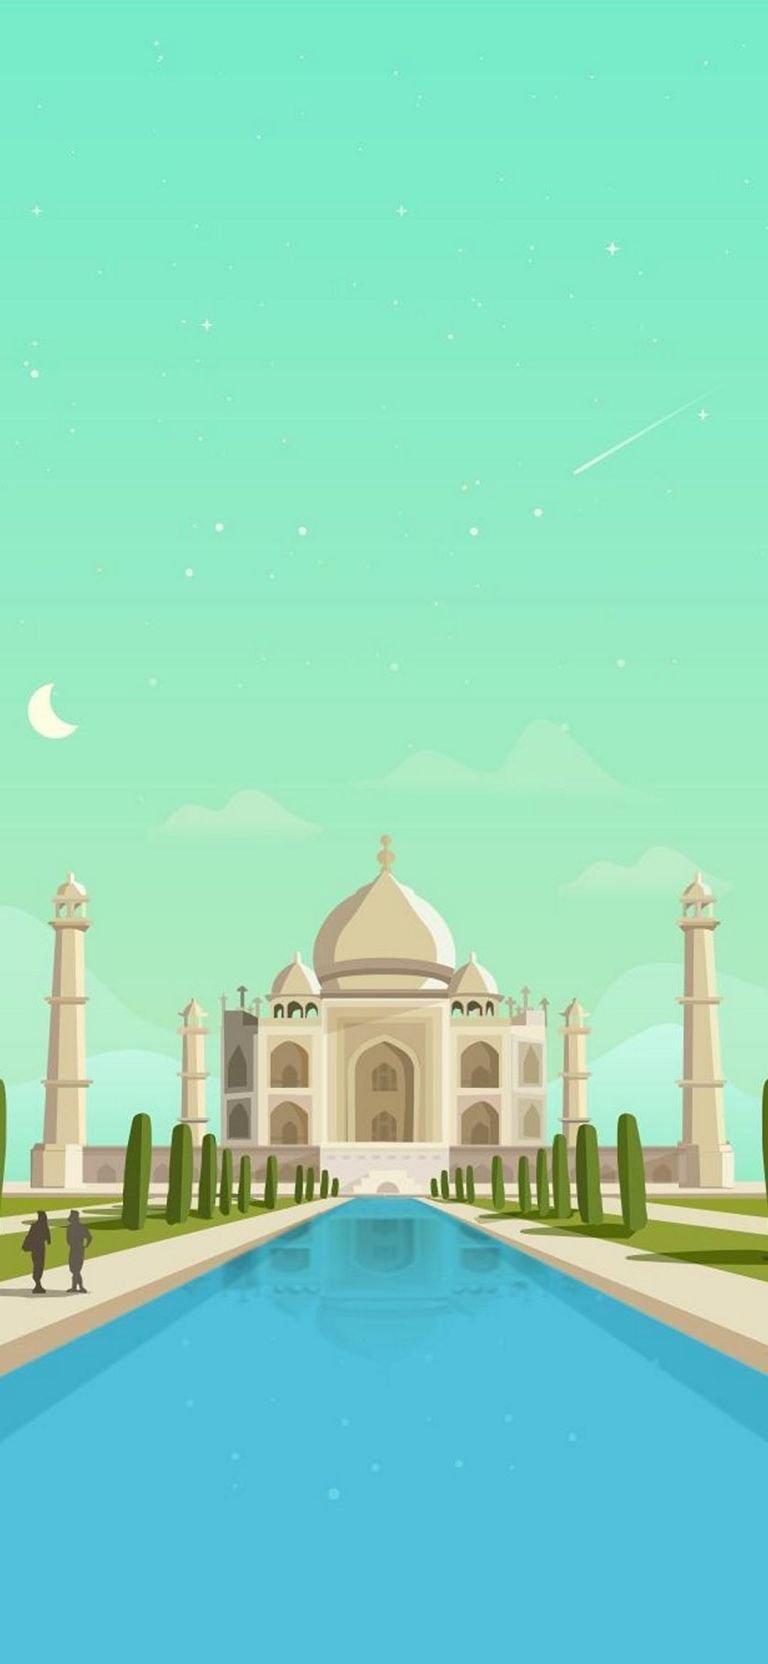 The taj mahal palace Wallpapers Download | MobCup